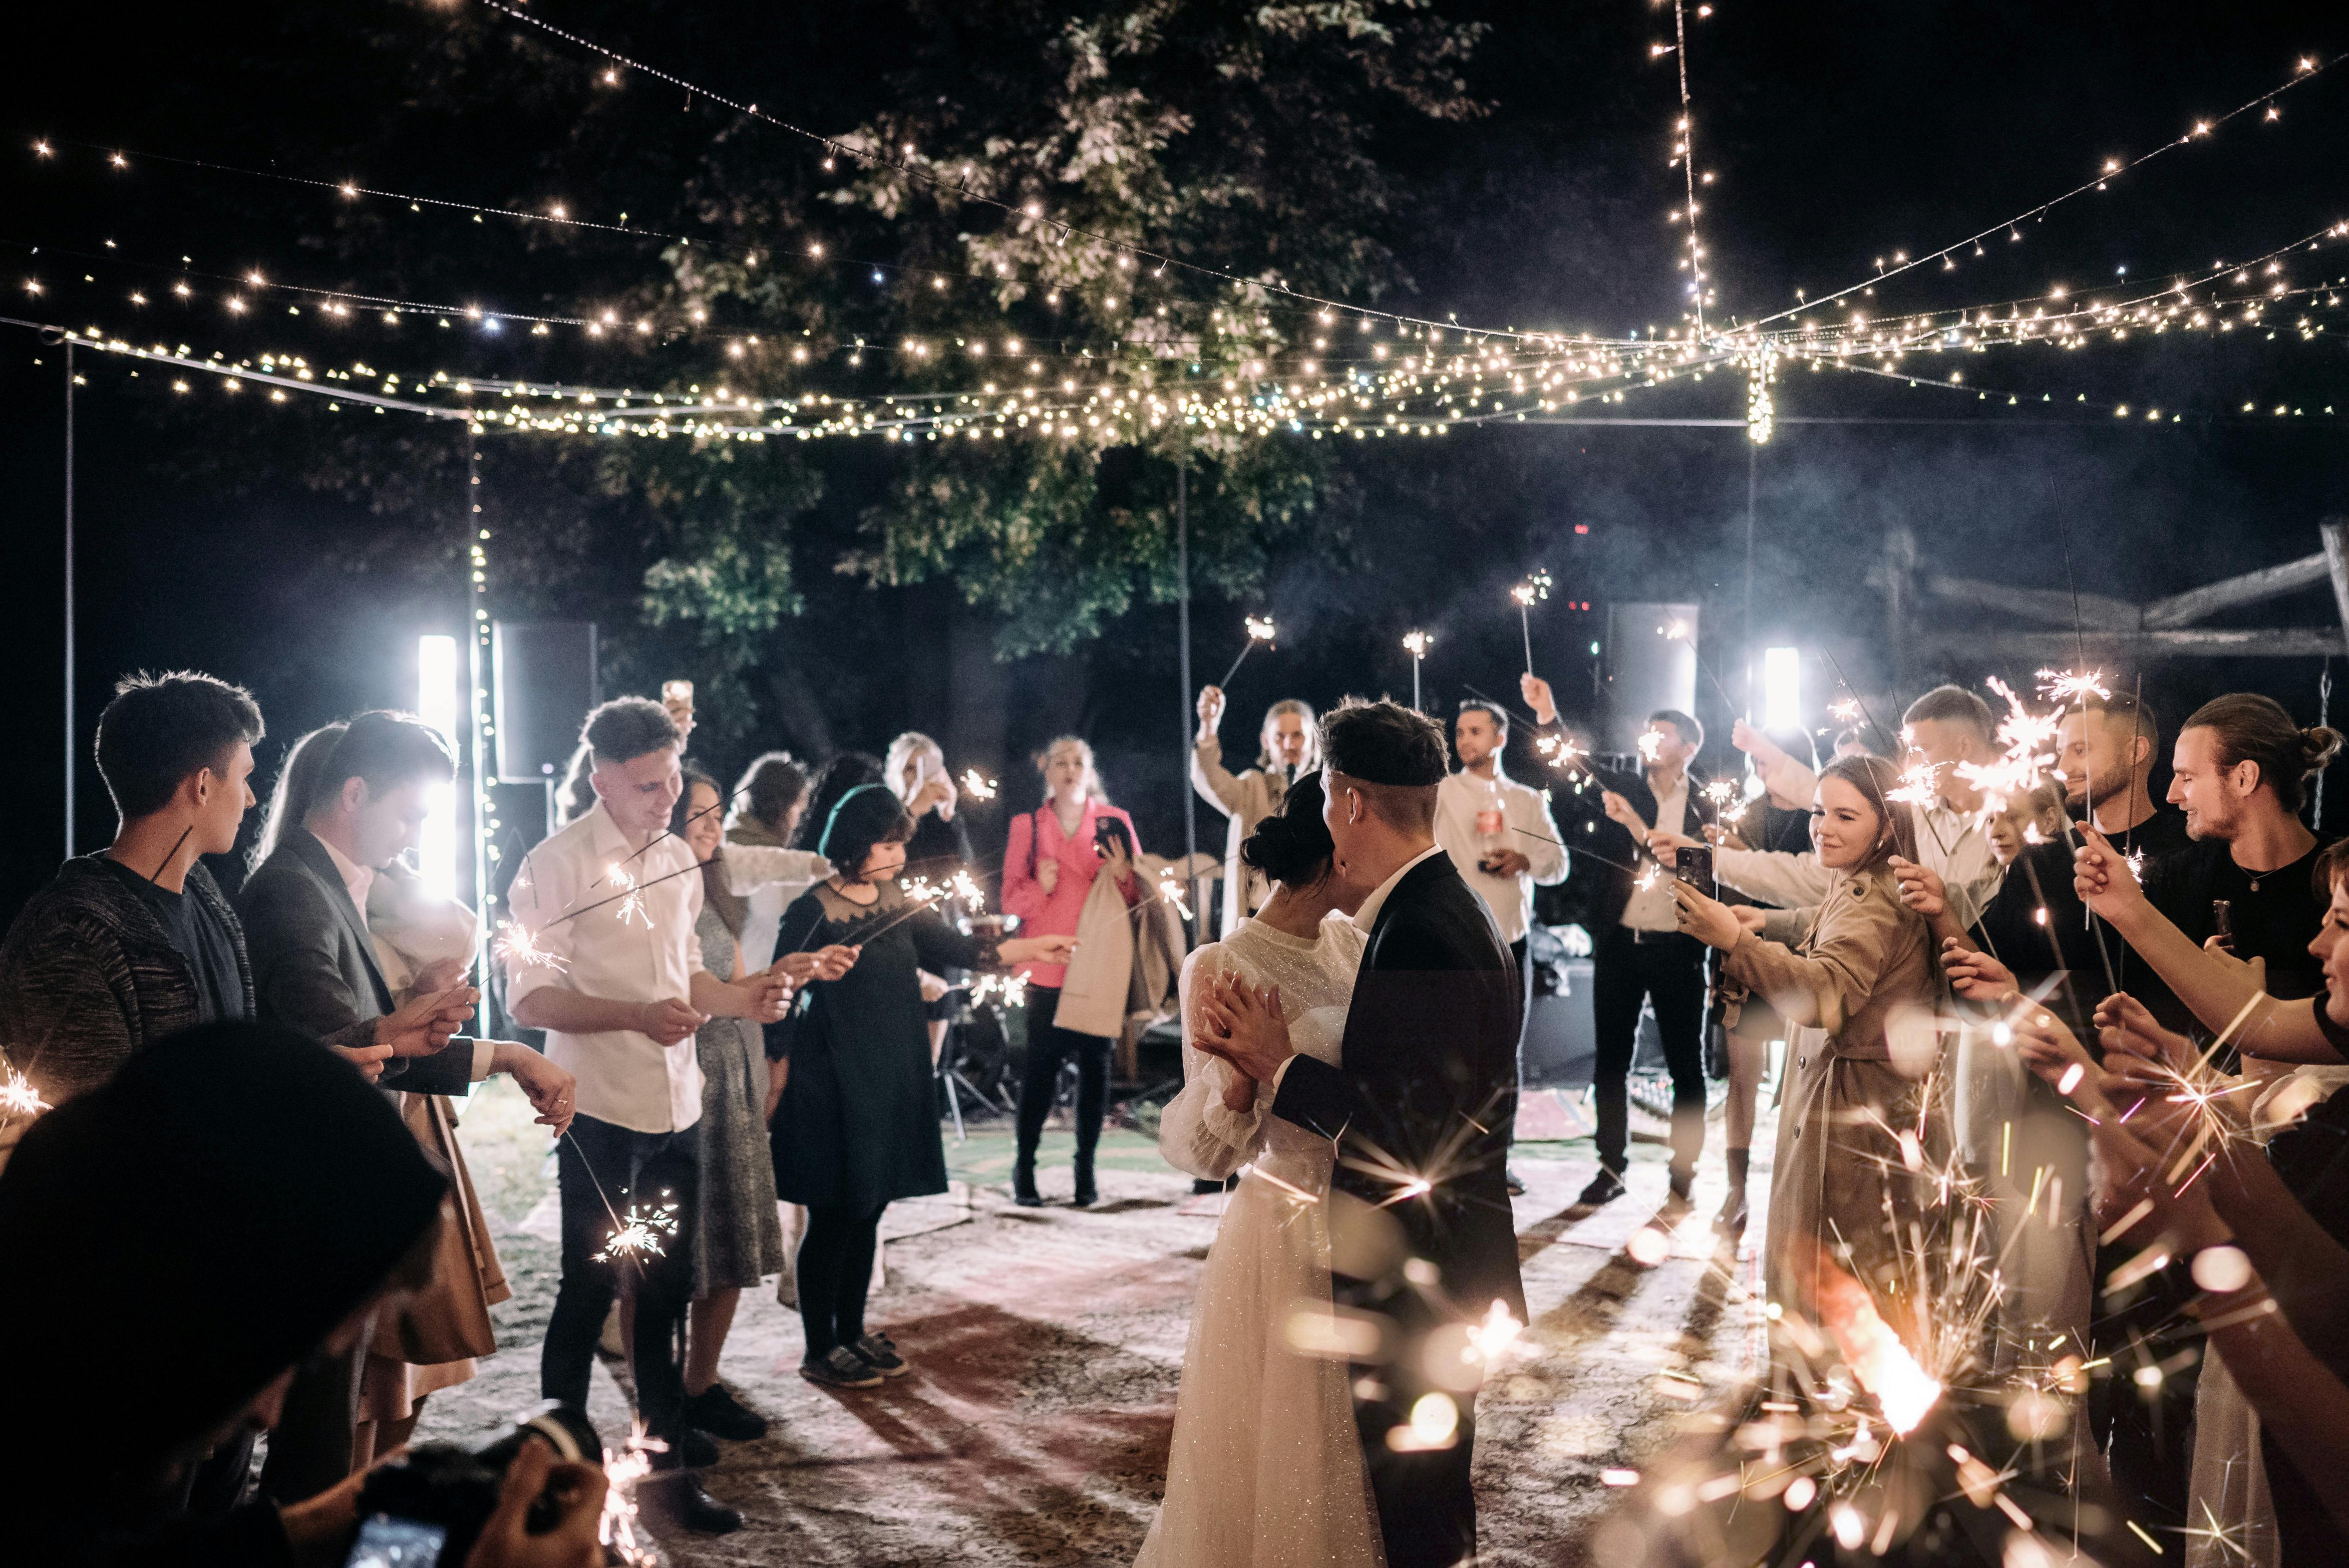 Les invités du mariage dansent jusqu'au bout de la nuit avec les mariés | Source : Pexels